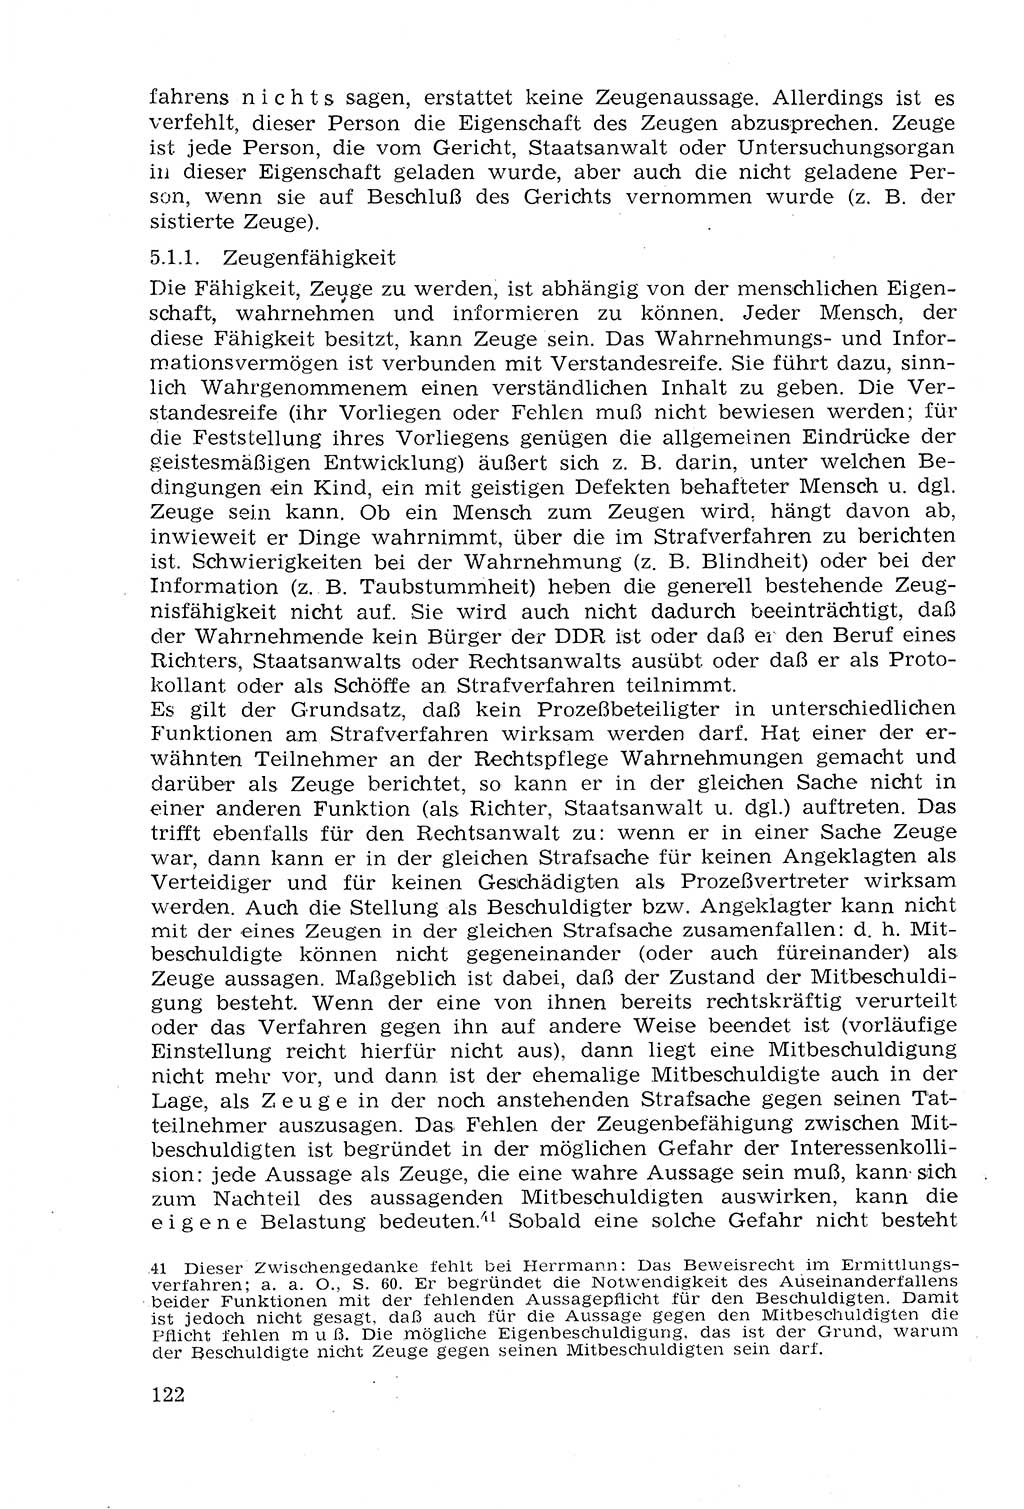 Strafprozeßrecht der DDR (Deutsche Demokratische Republik), Lehrmaterial 1969, Seite 122 (Strafprozeßr. DDR Lehrmat. 1969, S. 122)